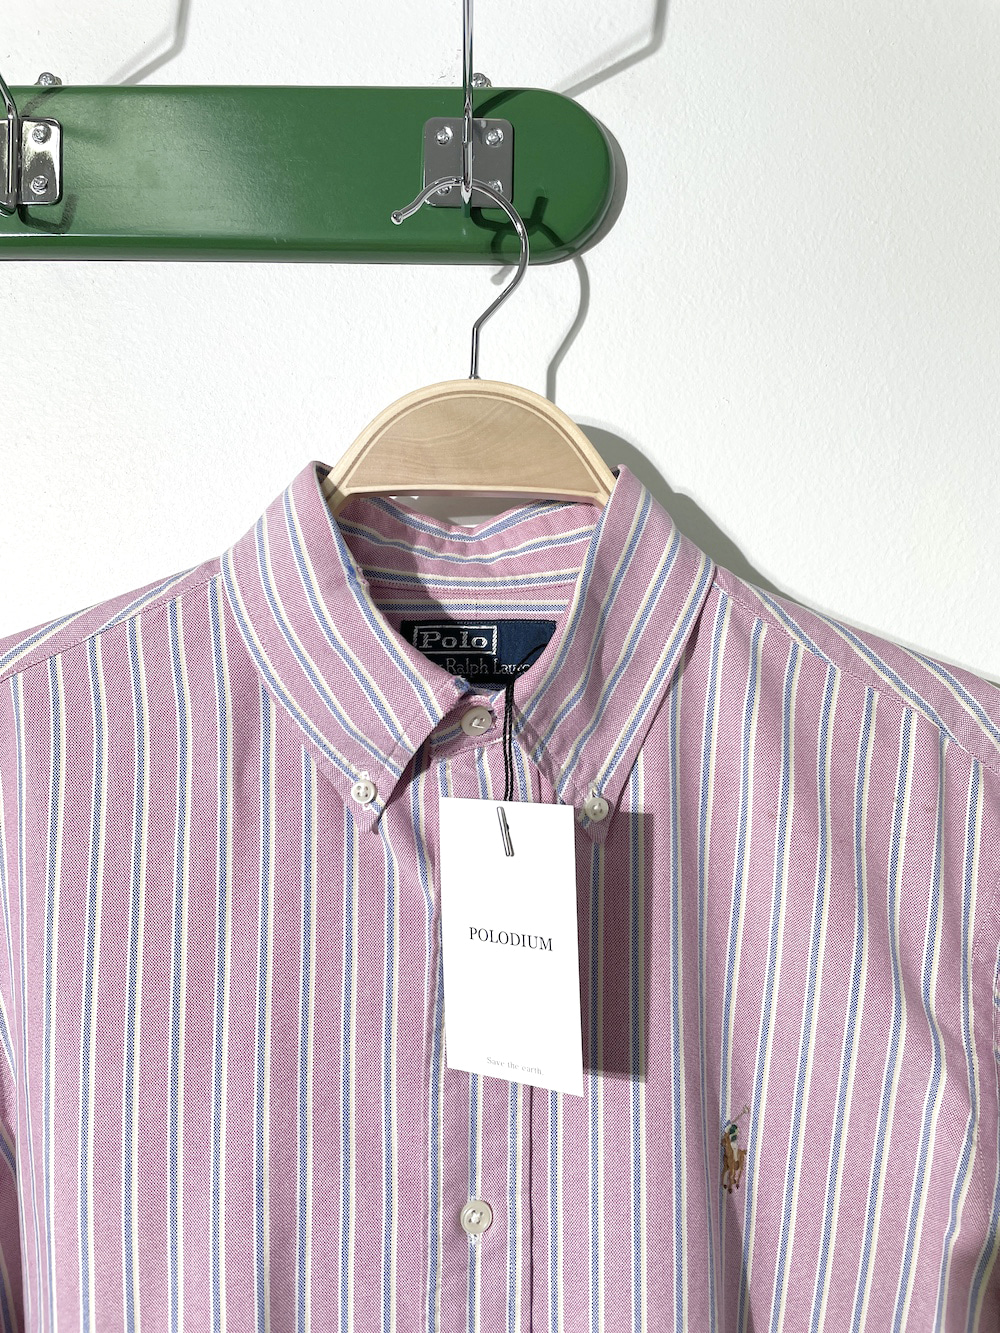 [ M ] Polo Ralph Lauren Shirt (6136)